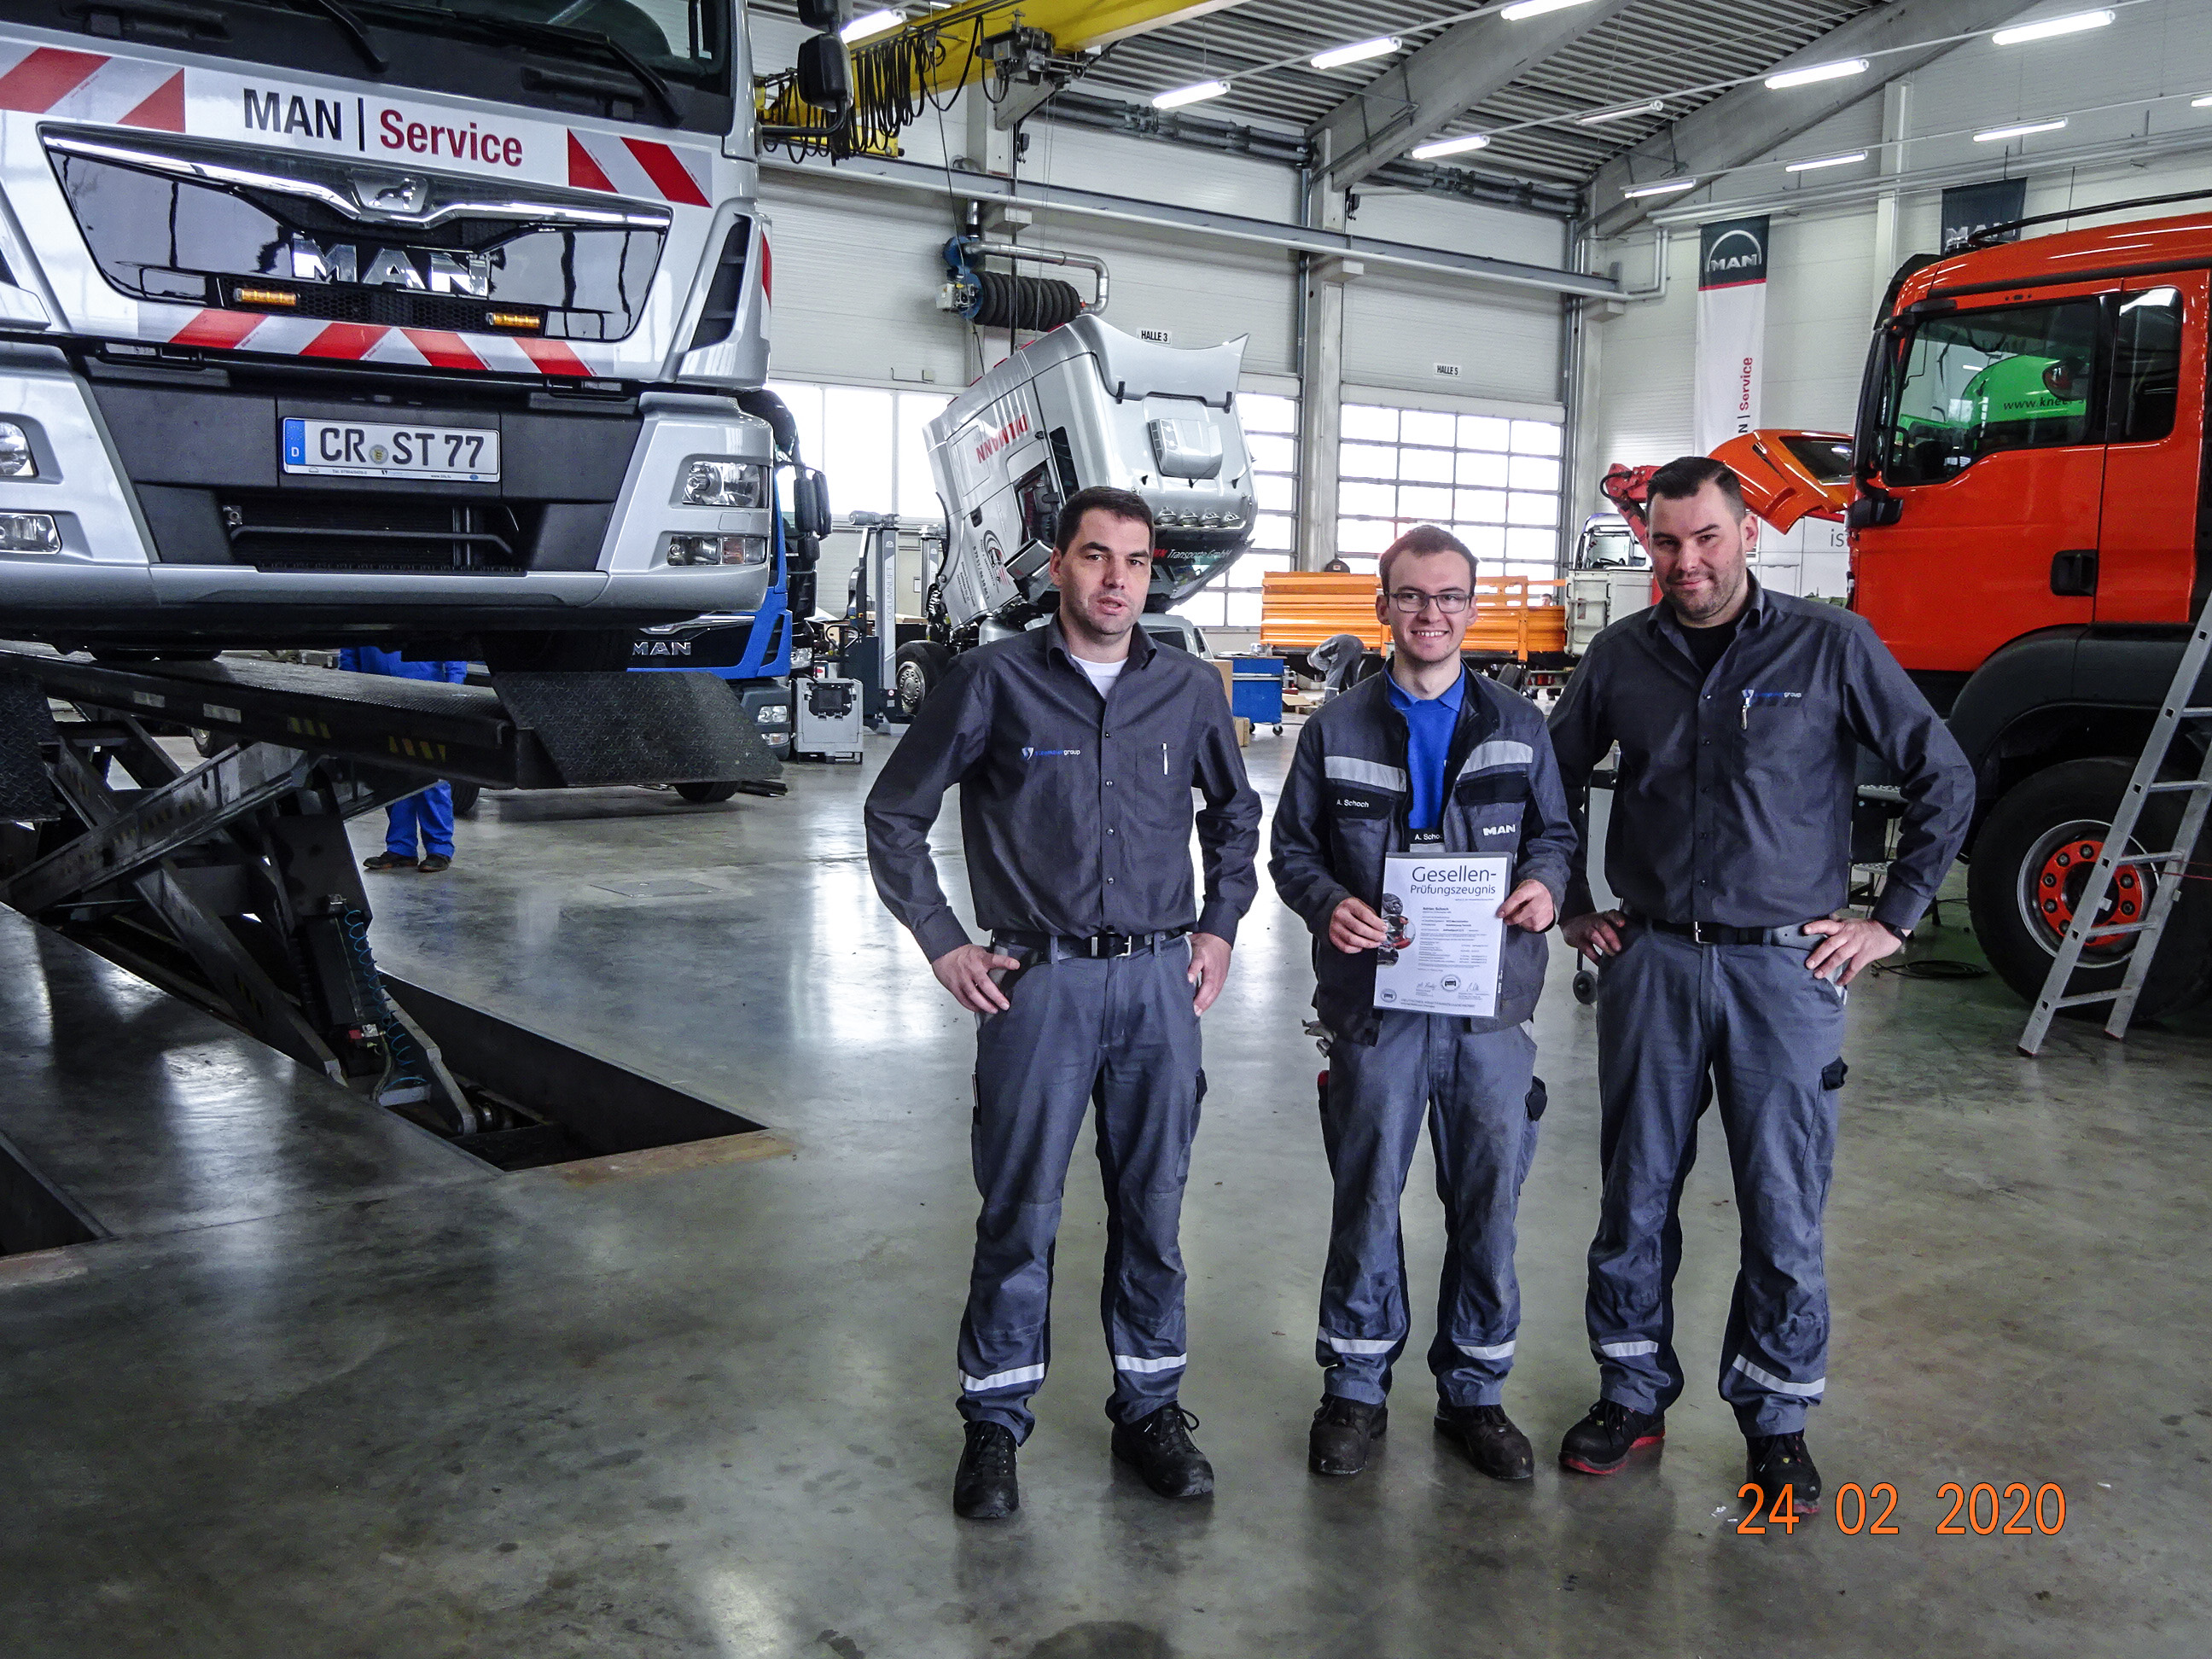 Purper Slapen barst Adrian Schoch schließt Ausbildung zum KFZ-Mechatroniker erfolgreich ab:  STEBAG Land- und Nutzfahrzeugtechnik GmbH